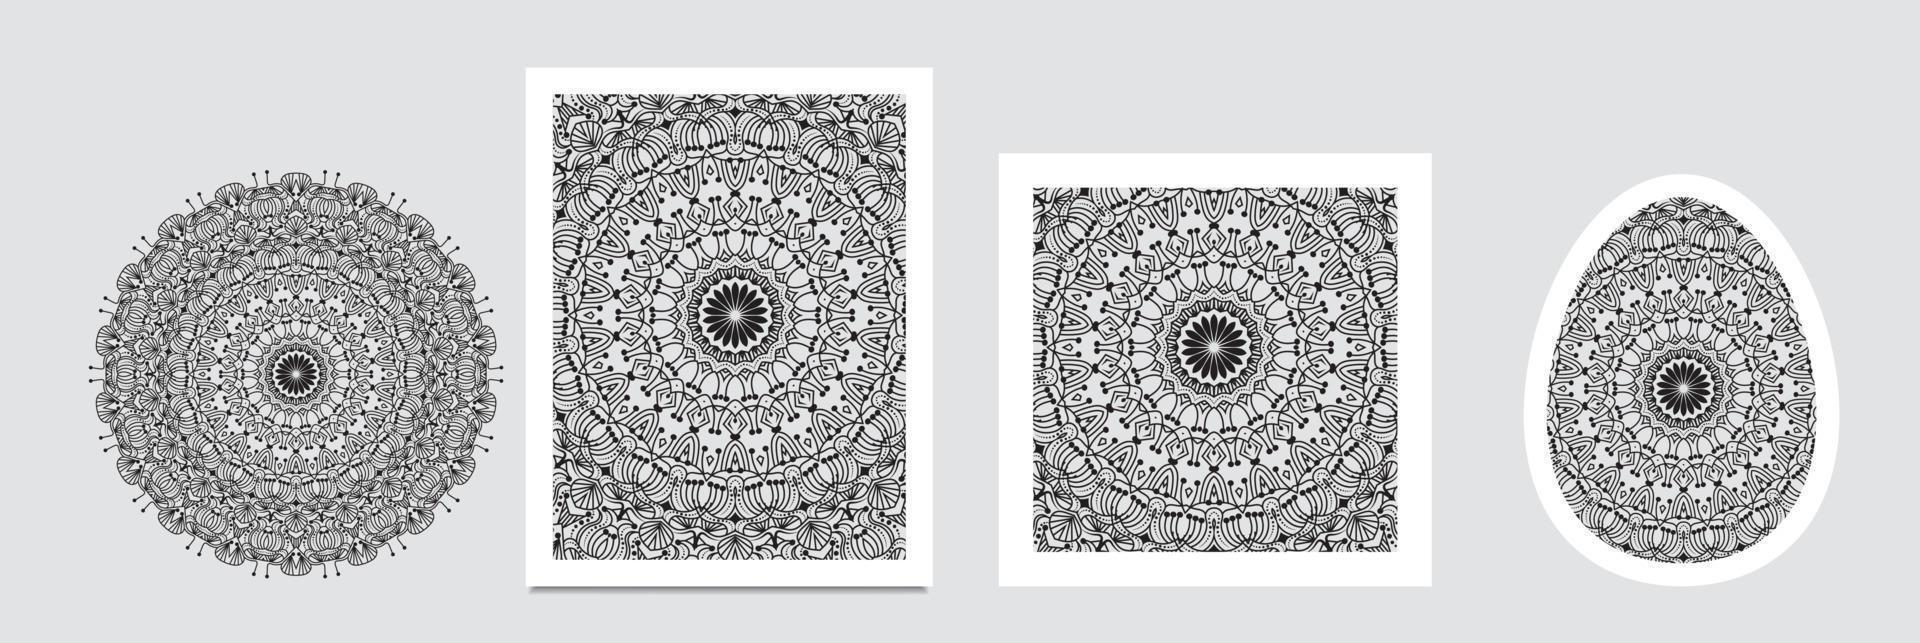 Mandala-Muster-Design für Hintergrund, Schalmuster-Textur zum Drucken auf Stoff, Titelfoto, Website, Mandala-Dekoration, Retro, Vintage, Trend, 3D-Illustration, Barock vektor